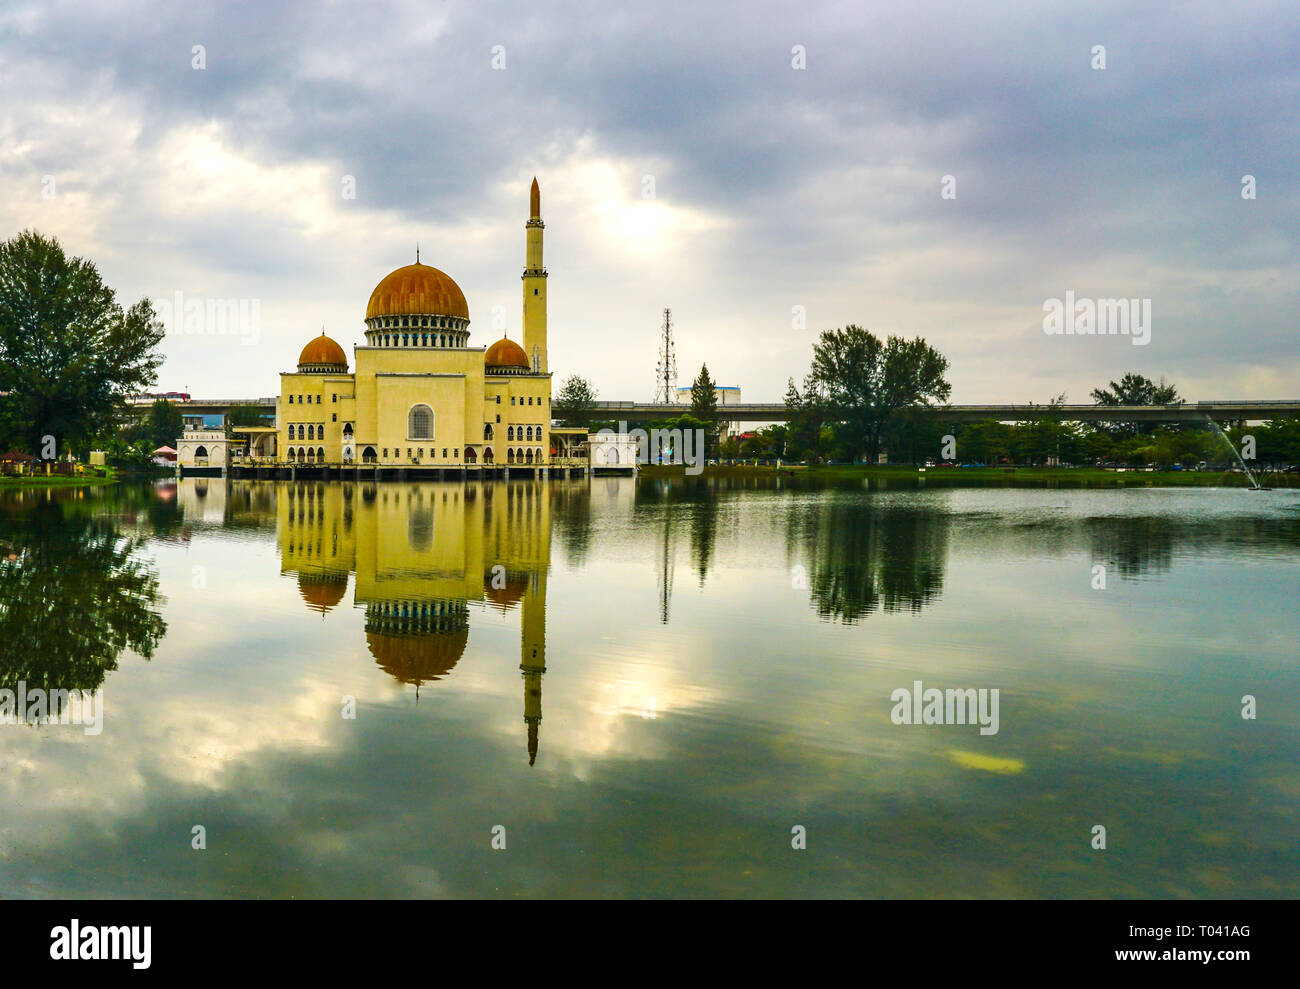 La moschea As-Salam in Malesia Foto Stock